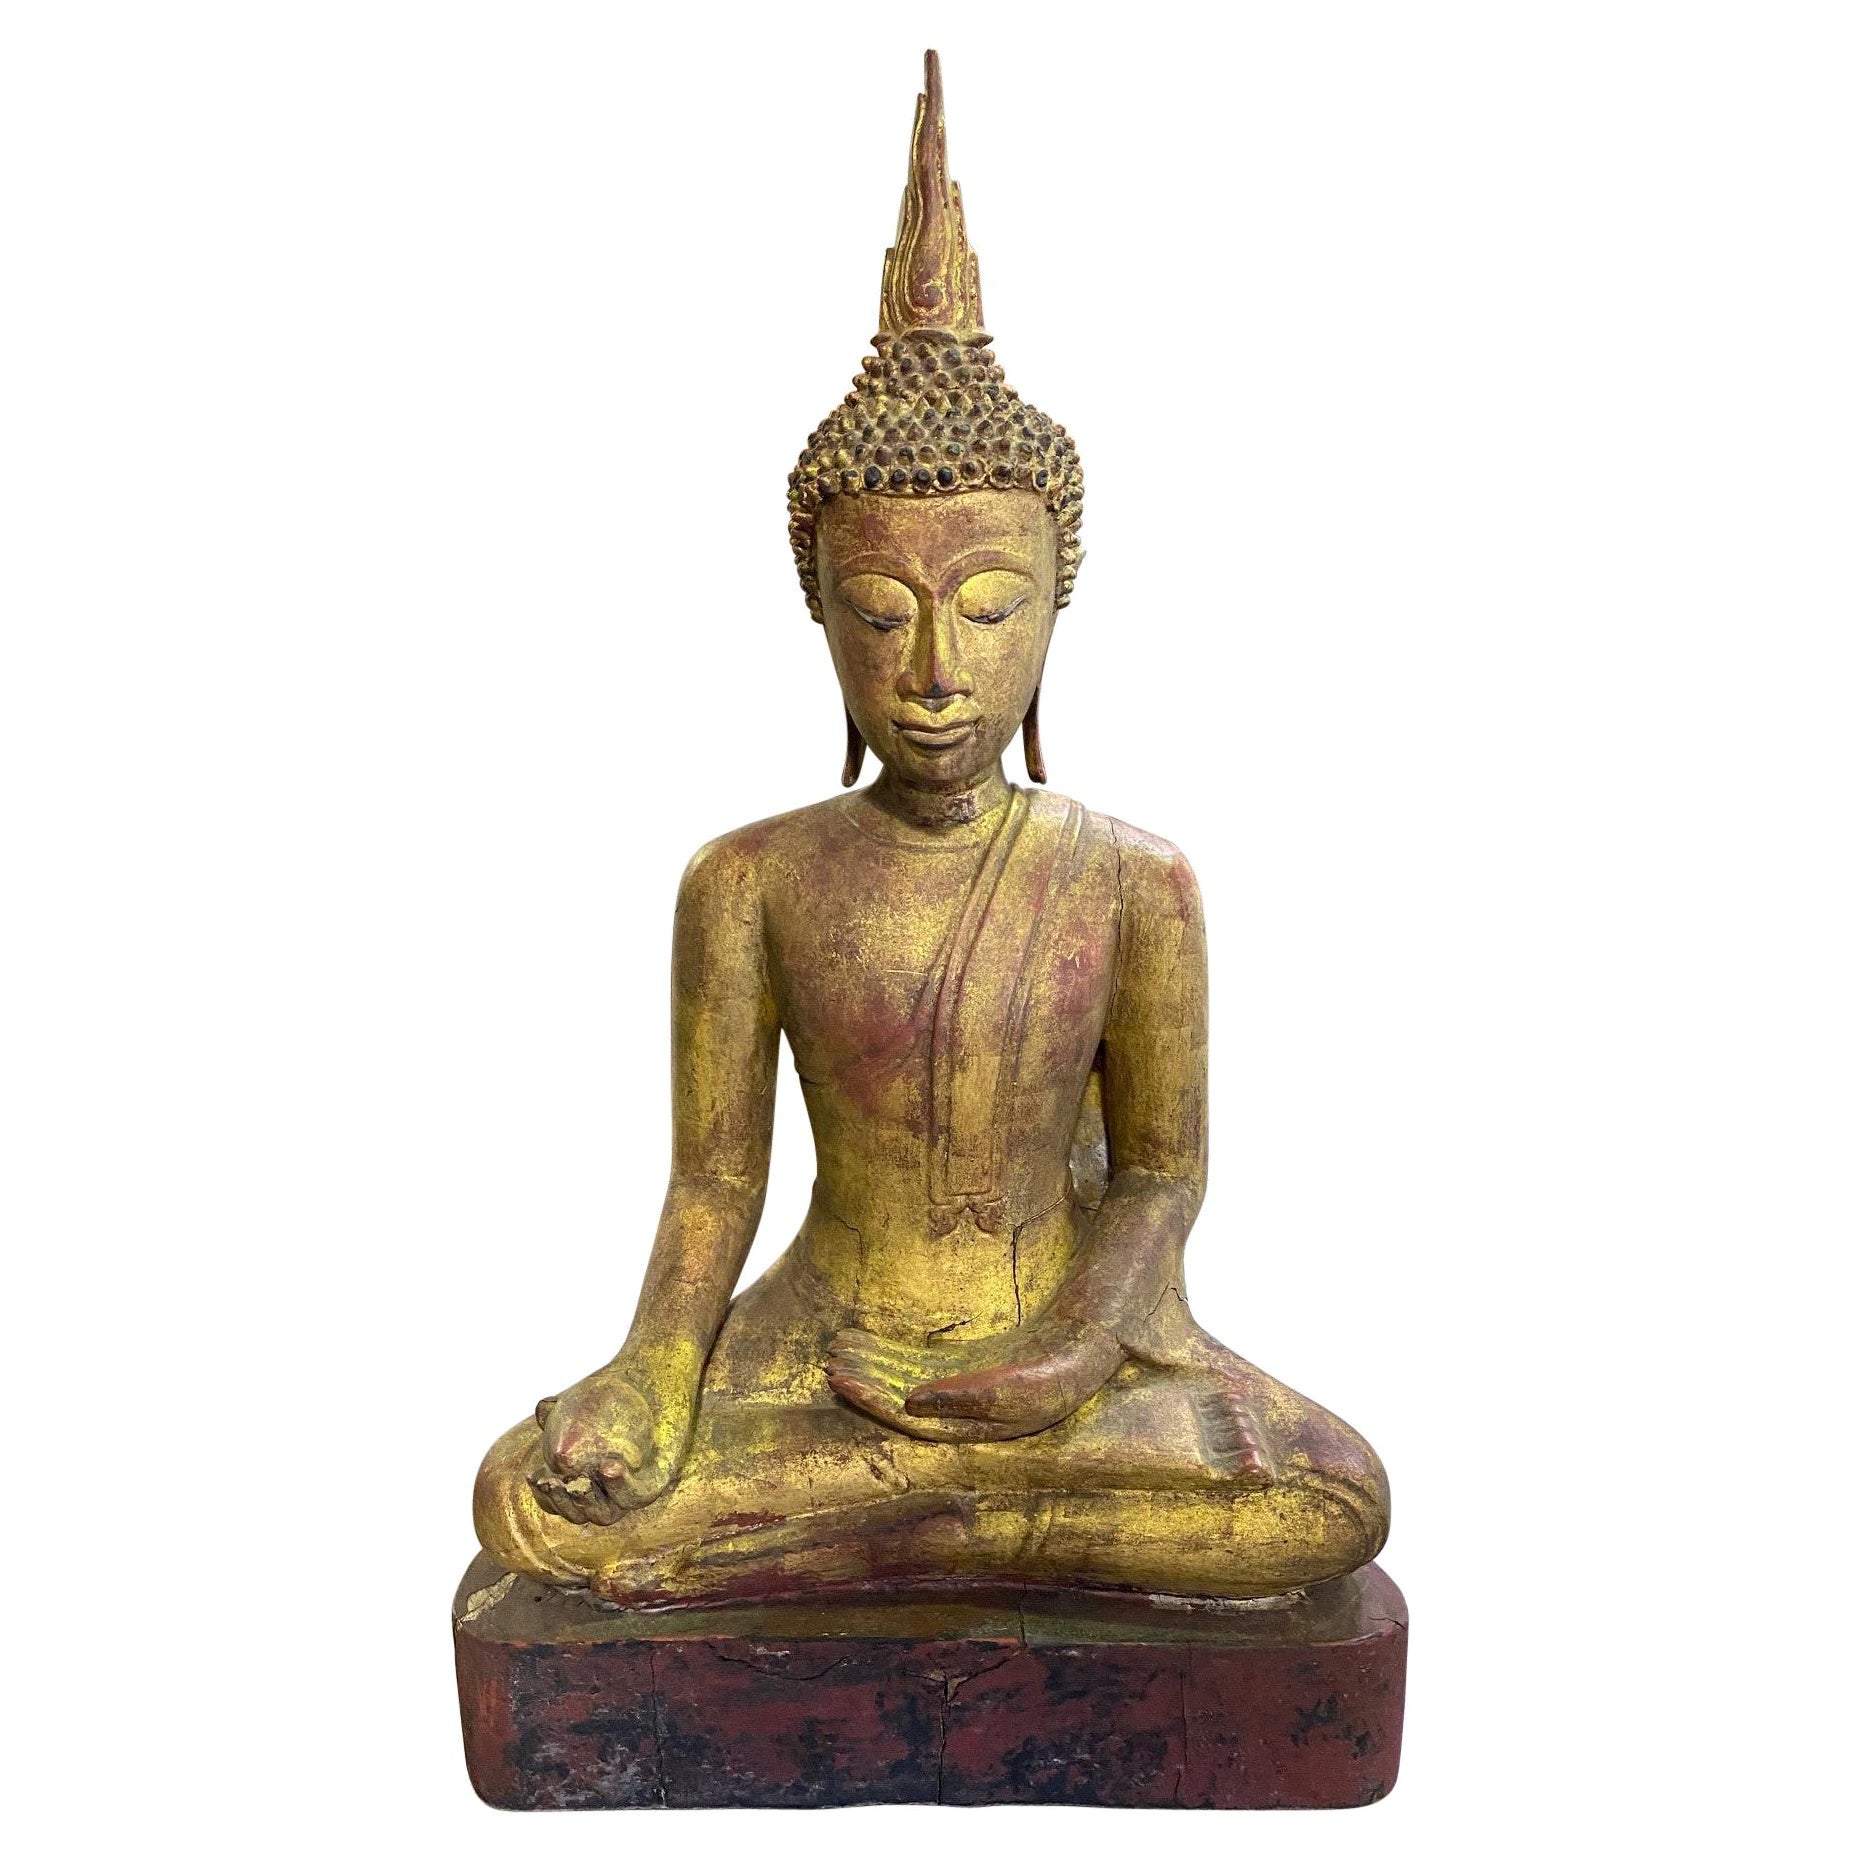 Bouddha serein asiatique en bois sculpté et doré assis, temple et sanctuaire en siam thaïlandais